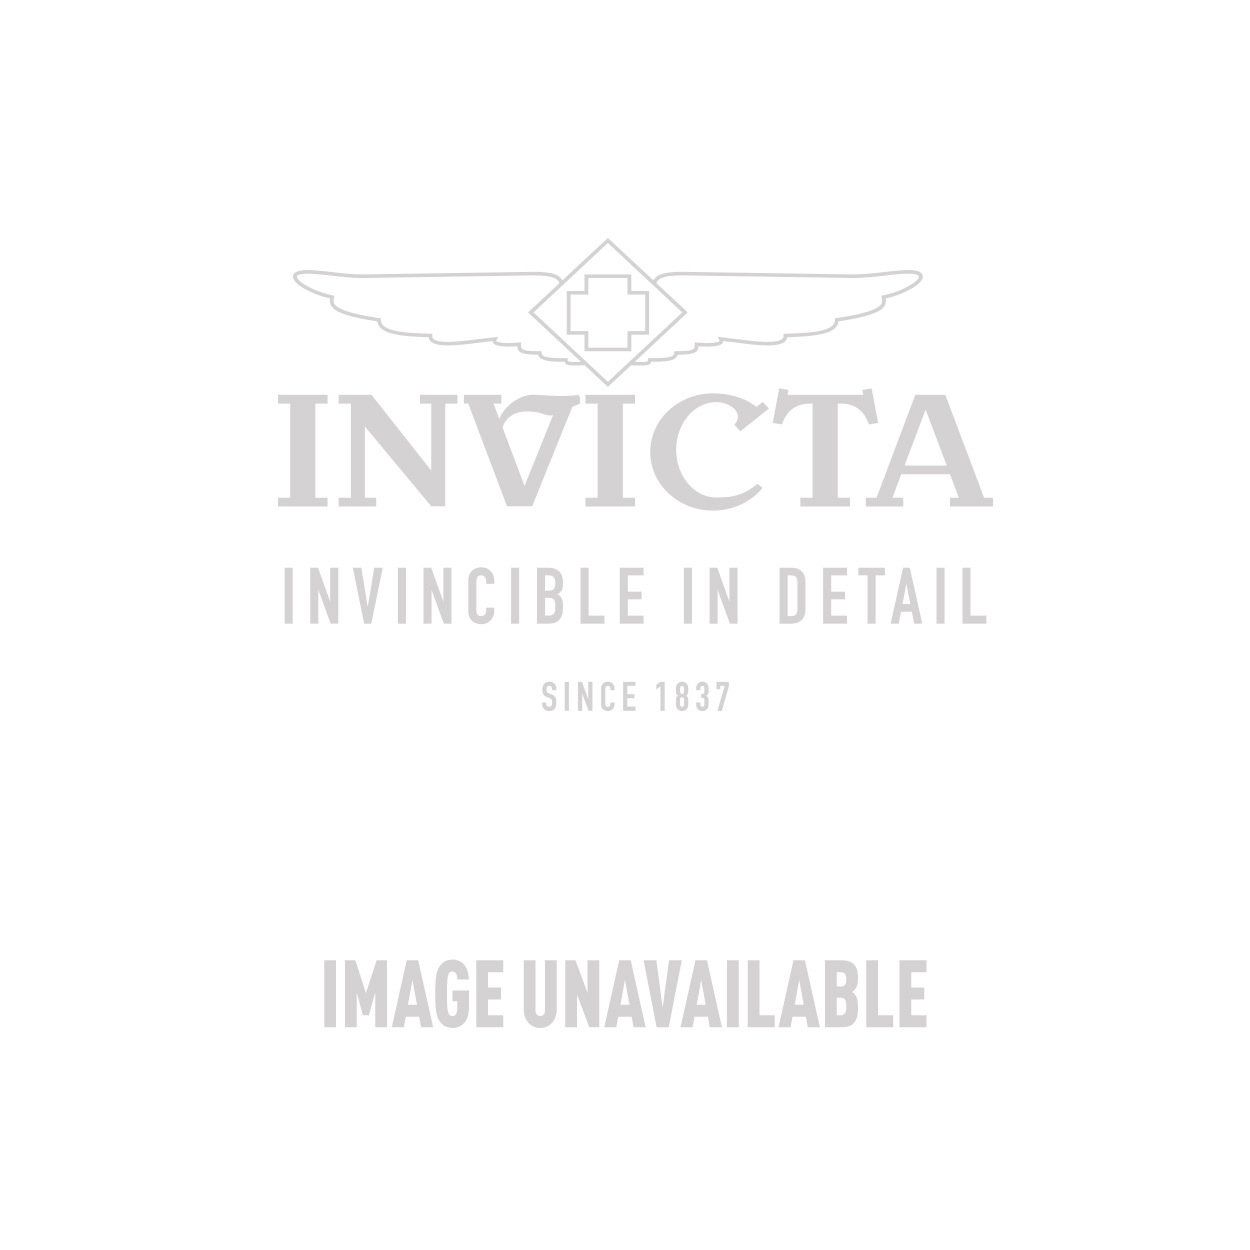 Invicta Model 28546